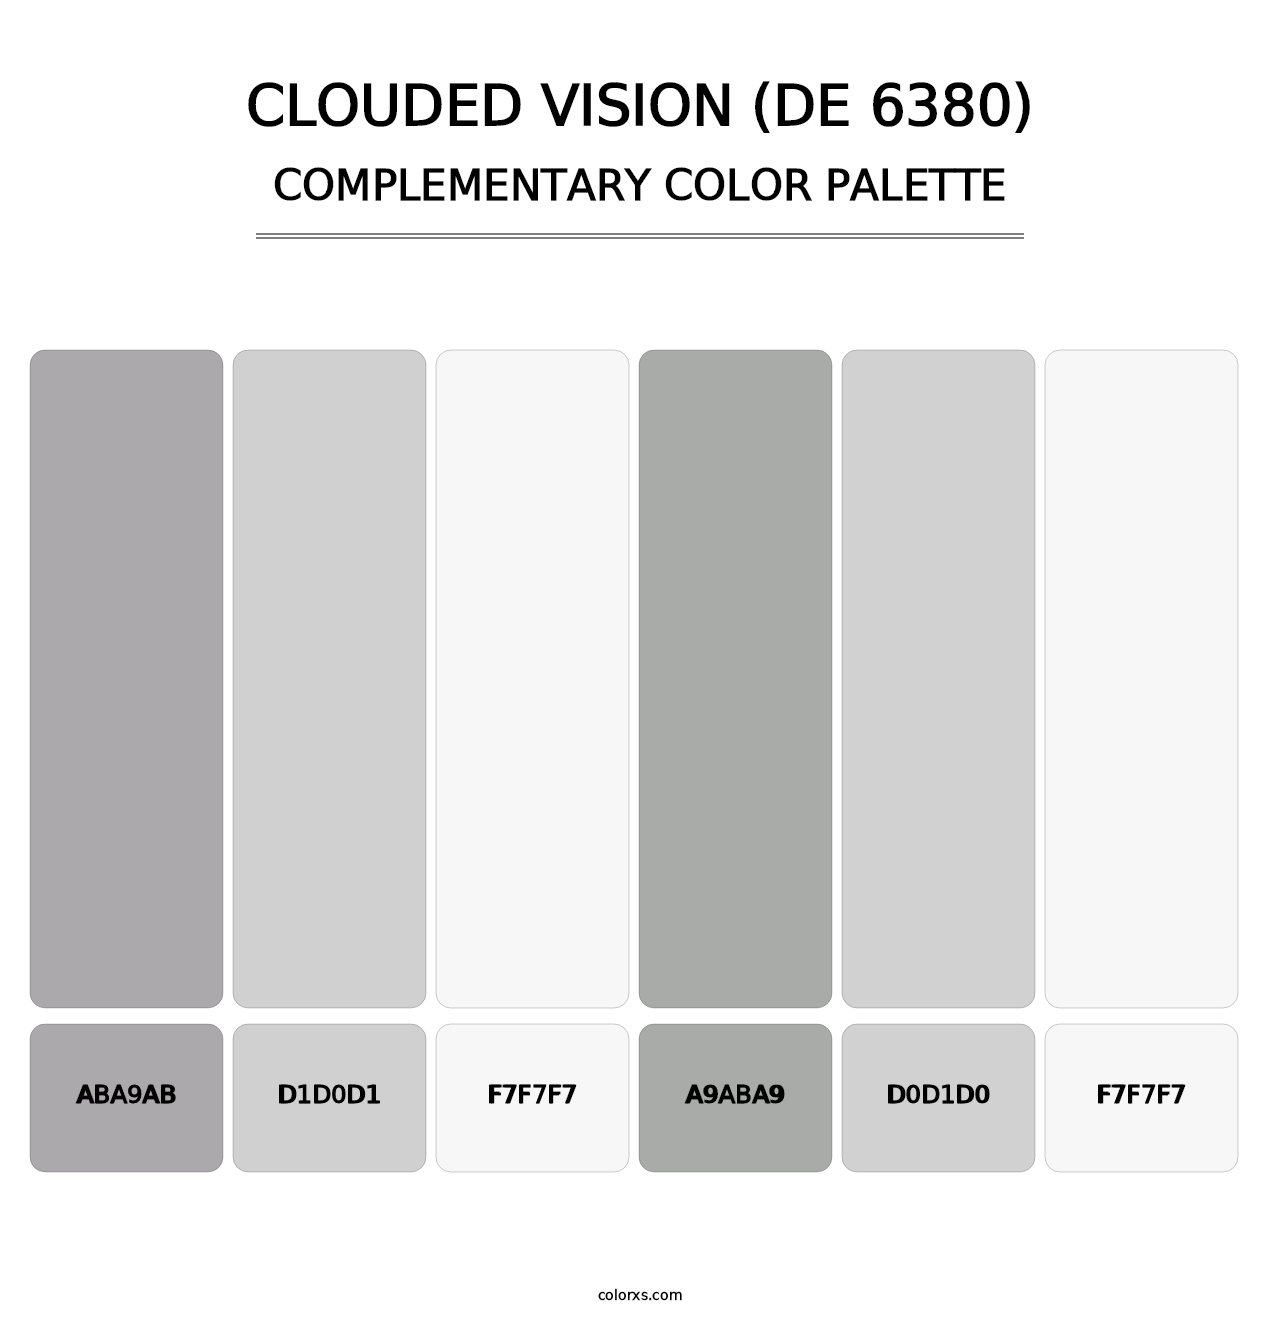 Clouded Vision (DE 6380) - Complementary Color Palette